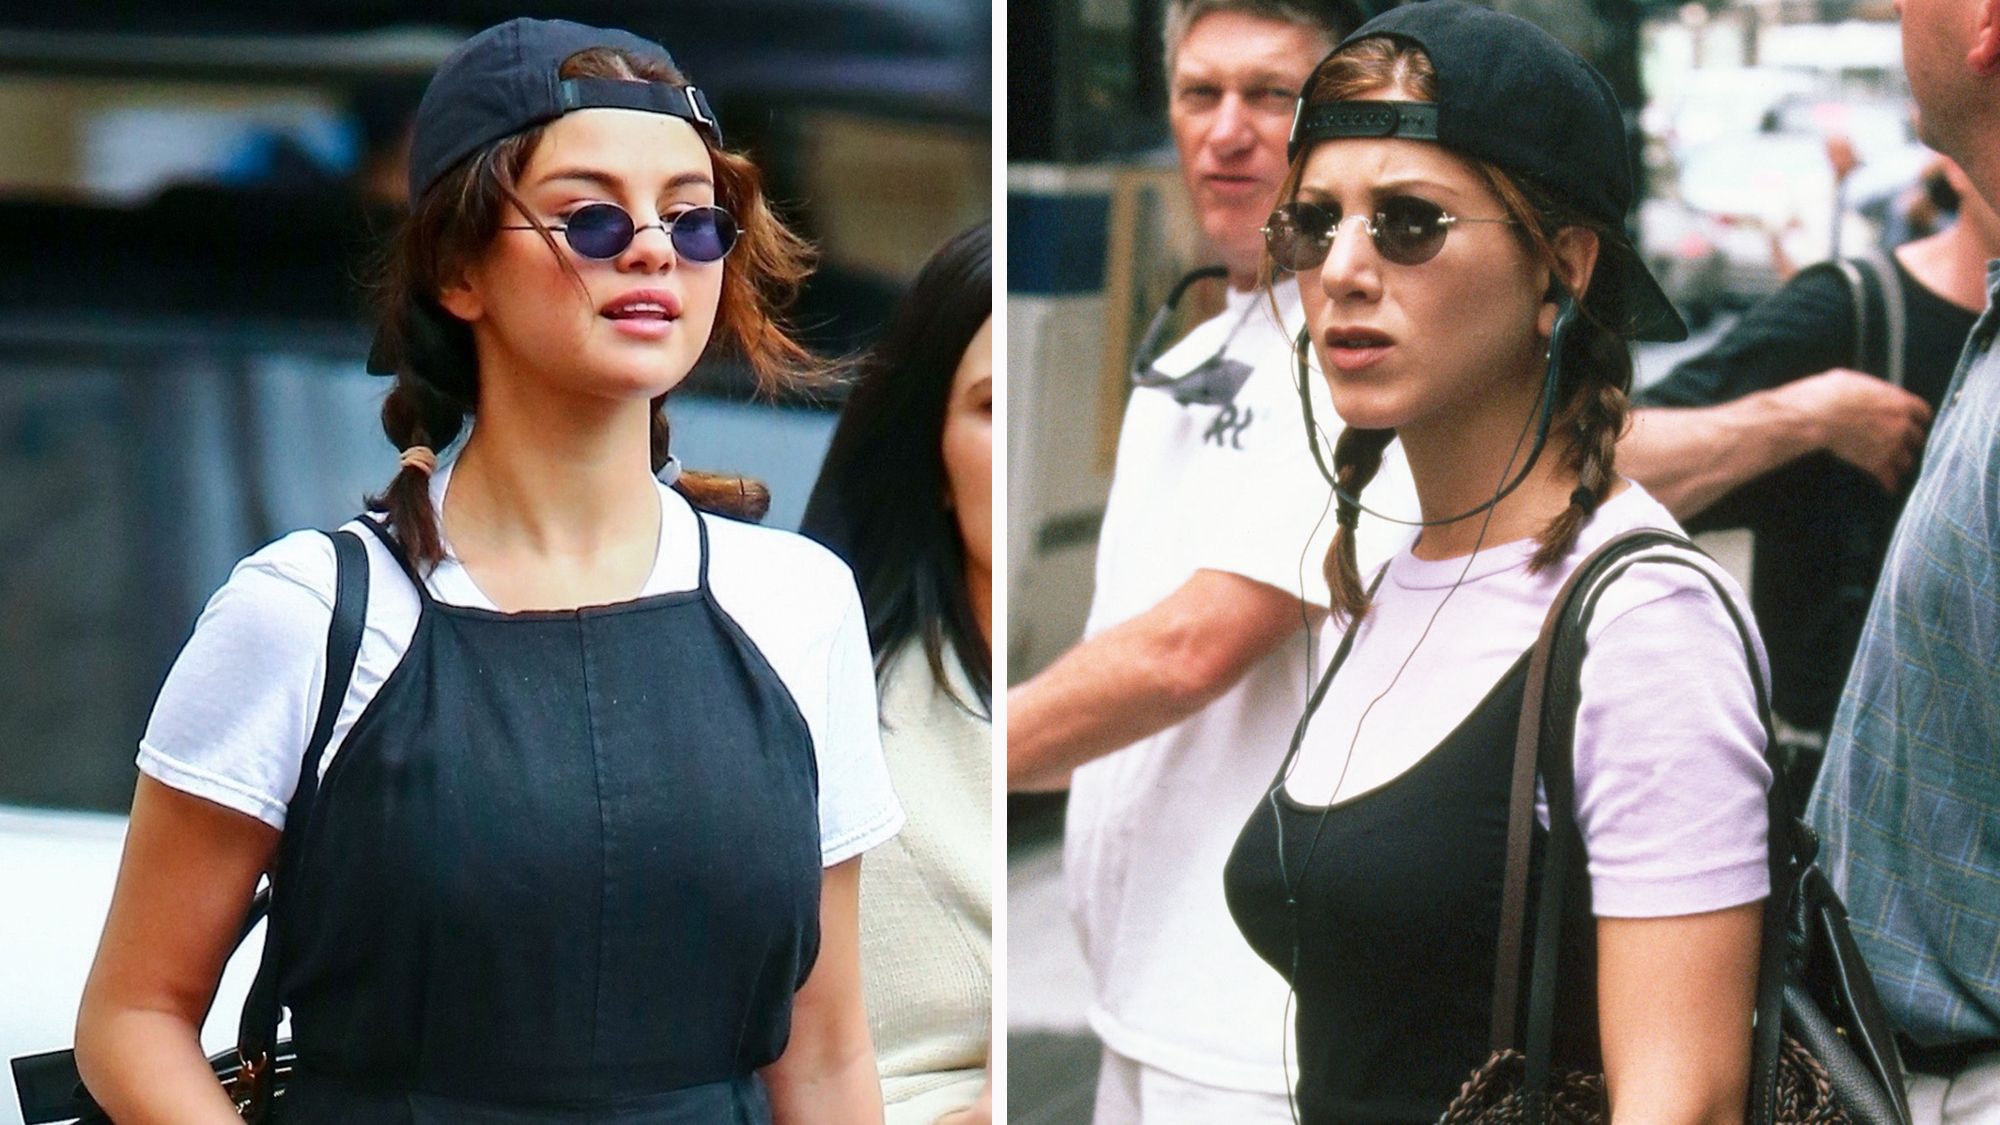 Selena Gomez: White Leather Jacket And Black Shoulder Bag - Iconic